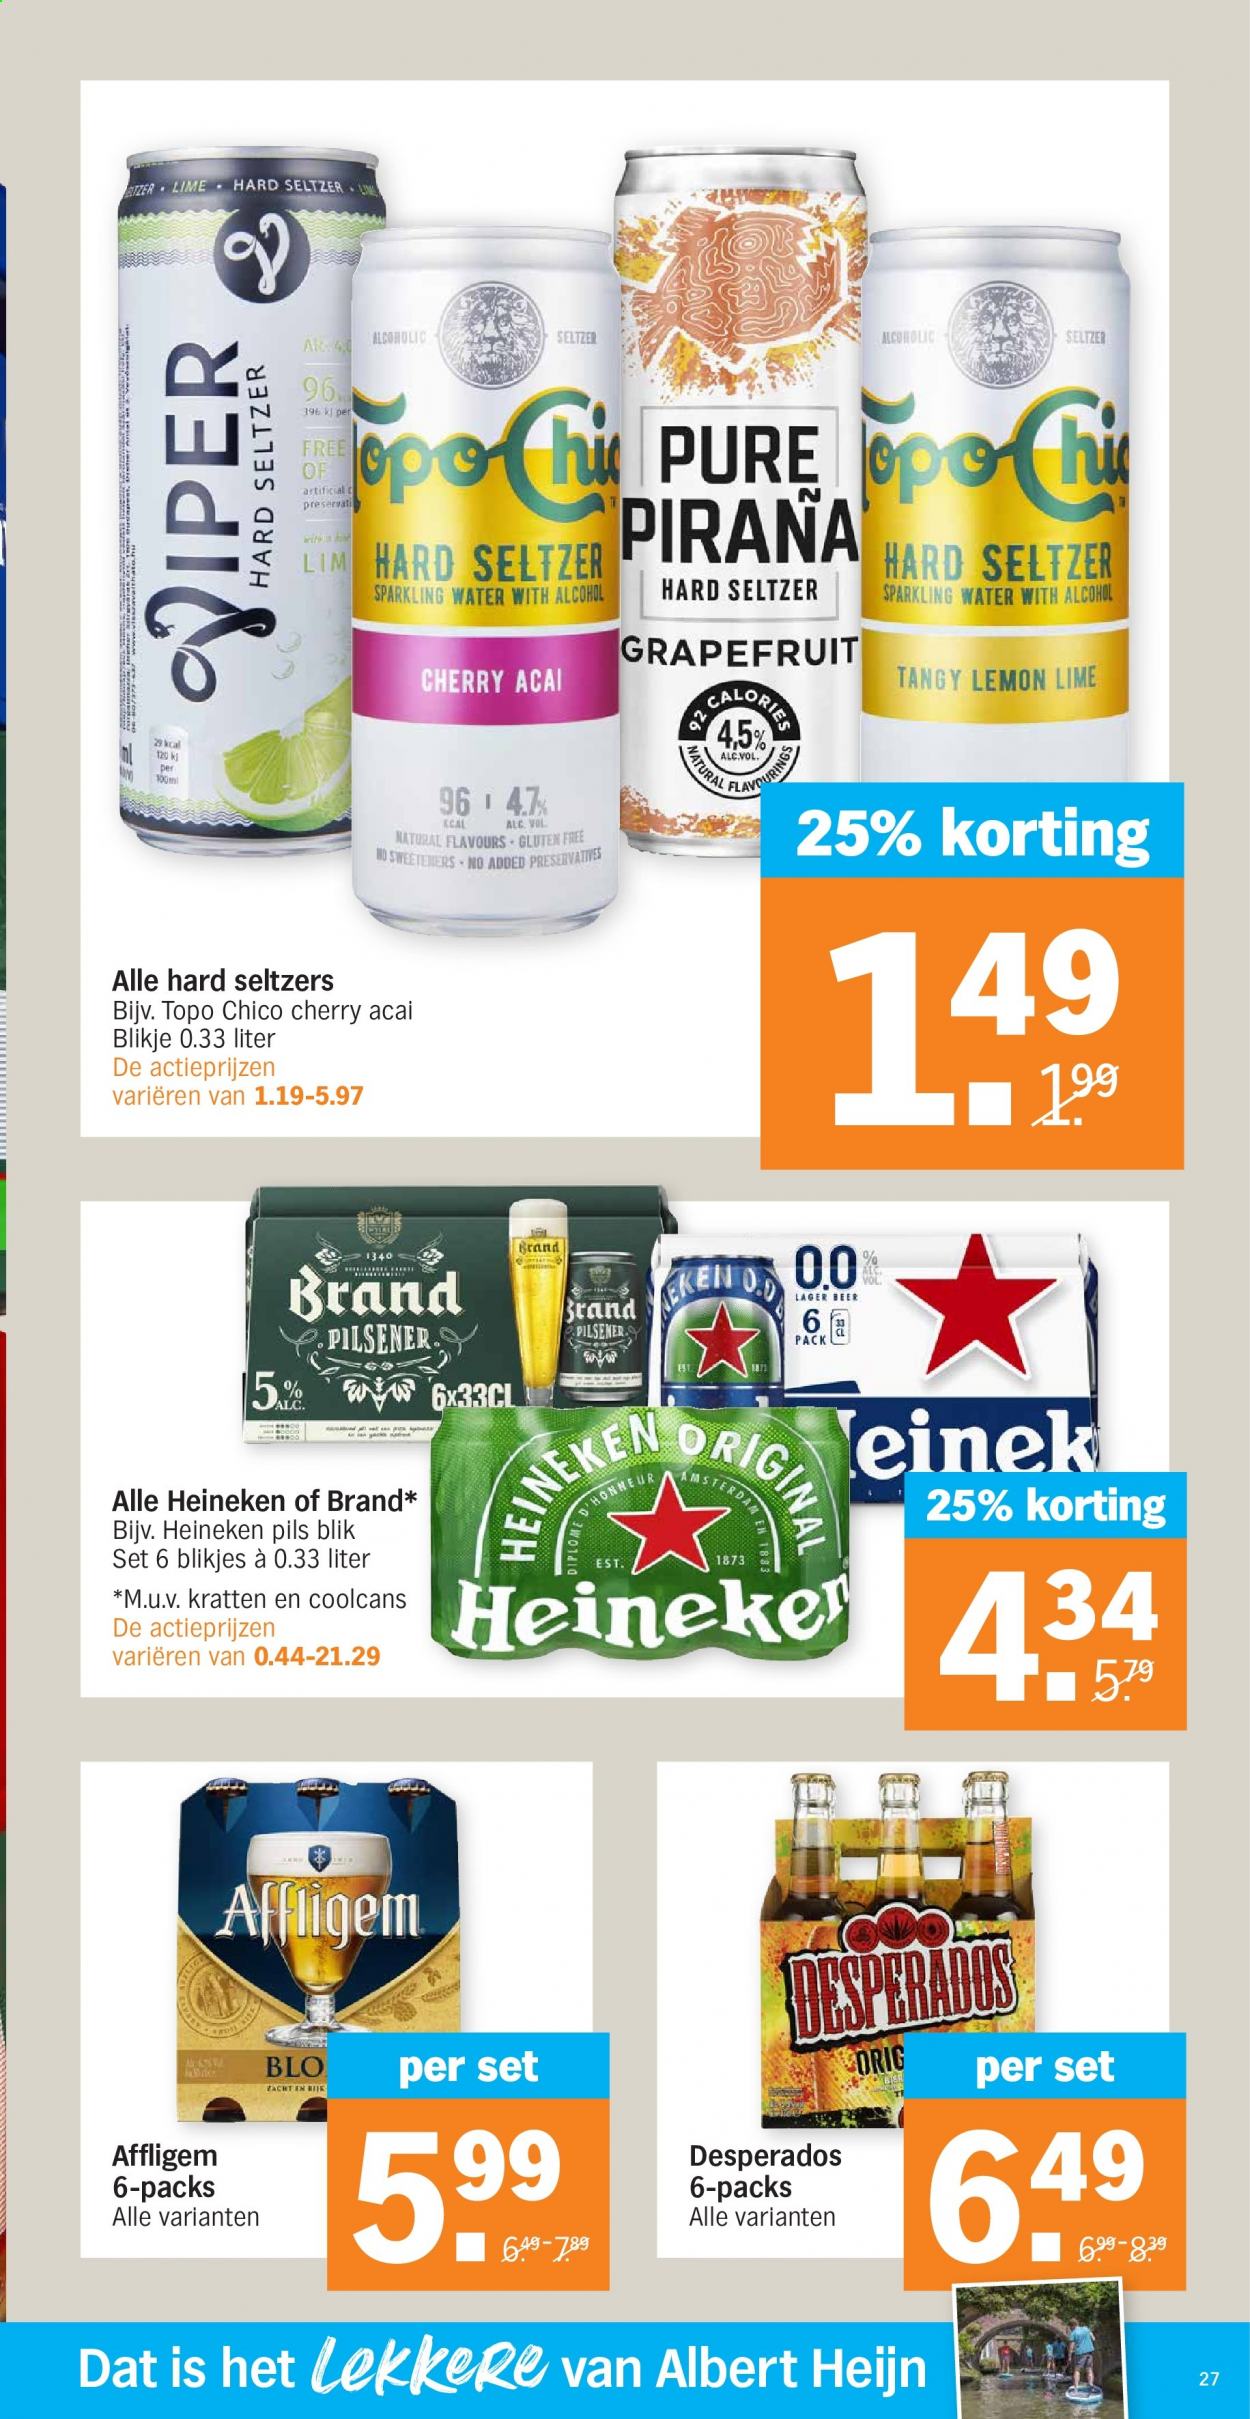 thumbnail - Albert Heijn-aanbieding - 12-7-2021 - 18-7-2021 -  producten in de aanbieding - Affligem, pilsener, Heineken, grapefruit. Pagina 29.